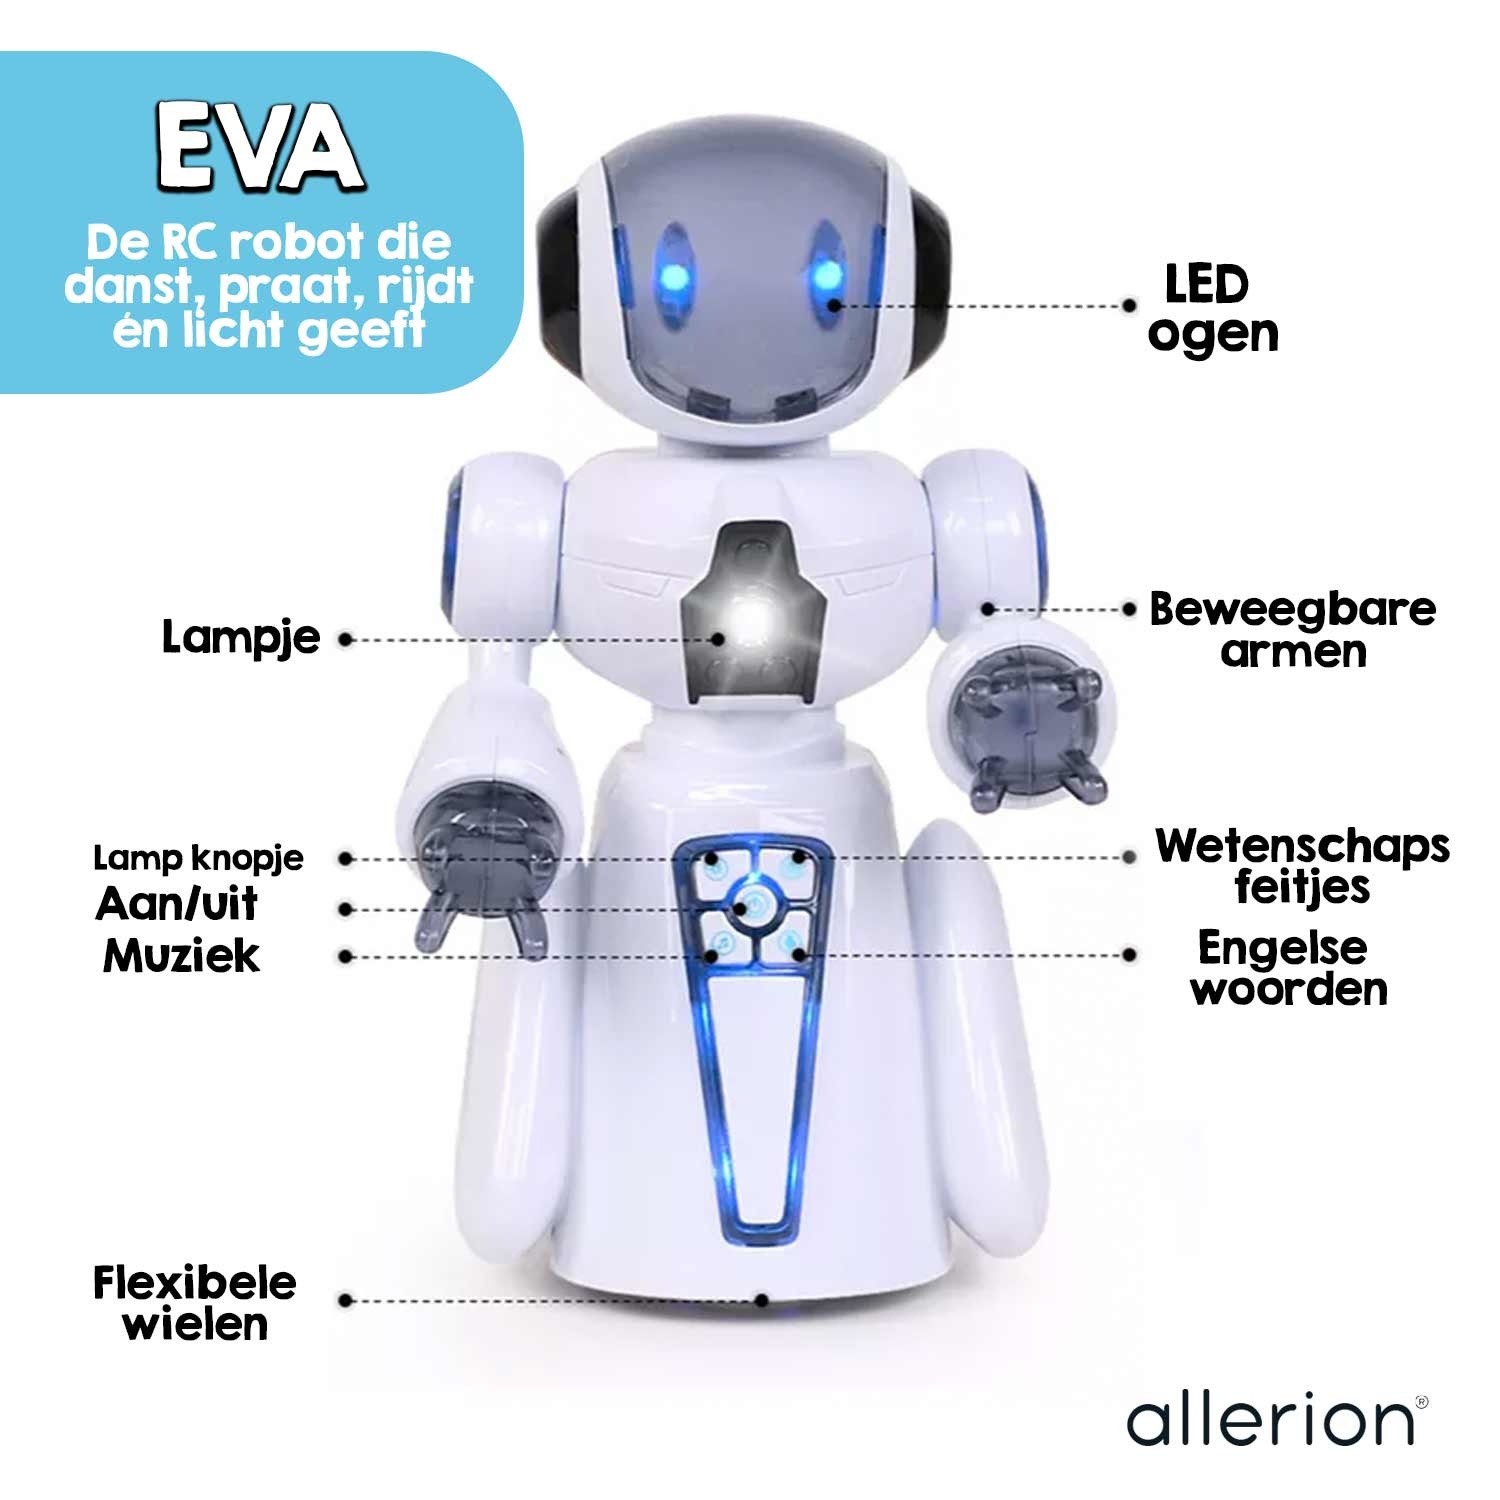 Aantrekkelijk zijn aantrekkelijk Bestrooi Veraangenamen Allerion - Robot Eva - Allerion